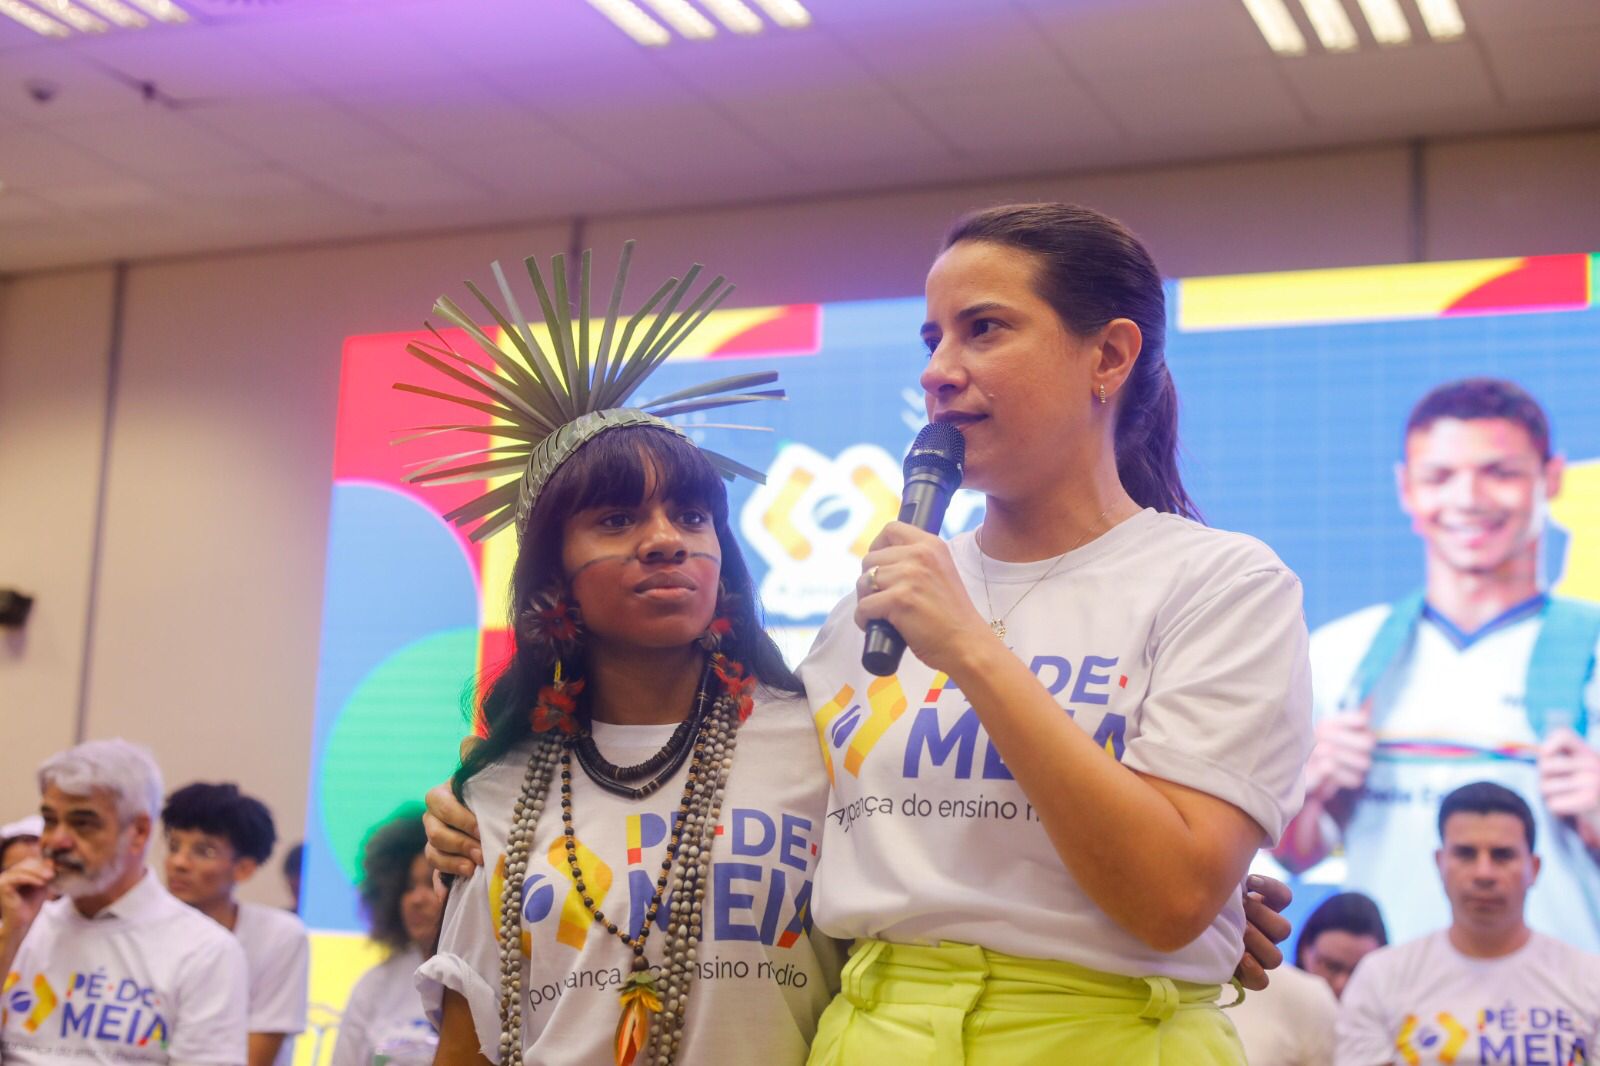 Governadora Raquel Lyra e o ministro da Educação, Camilo Santana, lançam o programa Pé-de-Meia em Pernambuco com investimento de R$ 500 milhões por ano no Estado